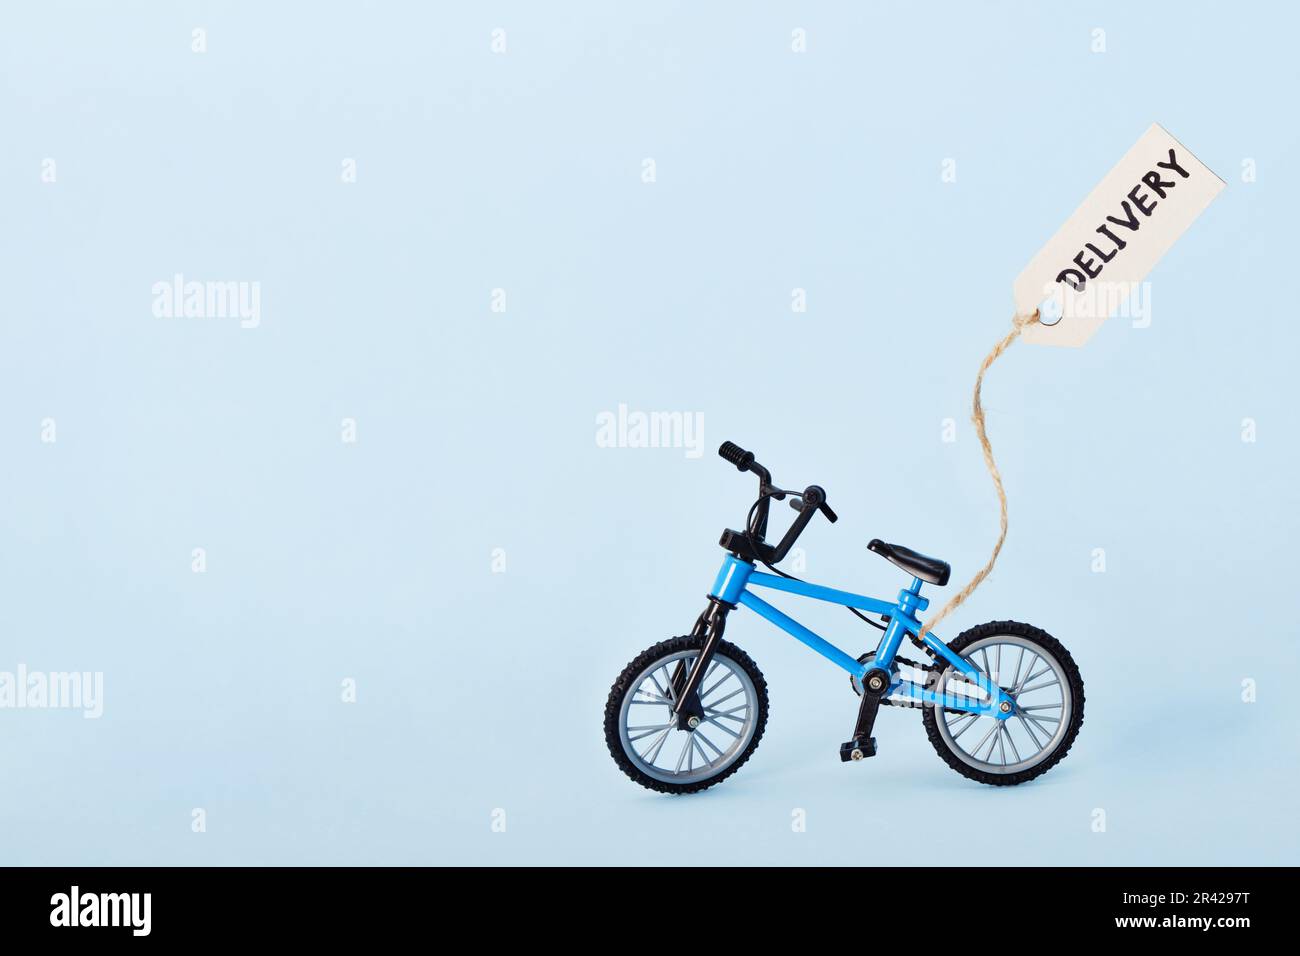 Concetto creativo di eco-consegna. Bicicletta ed etichetta con testo di consegna su sfondo blu Foto Stock